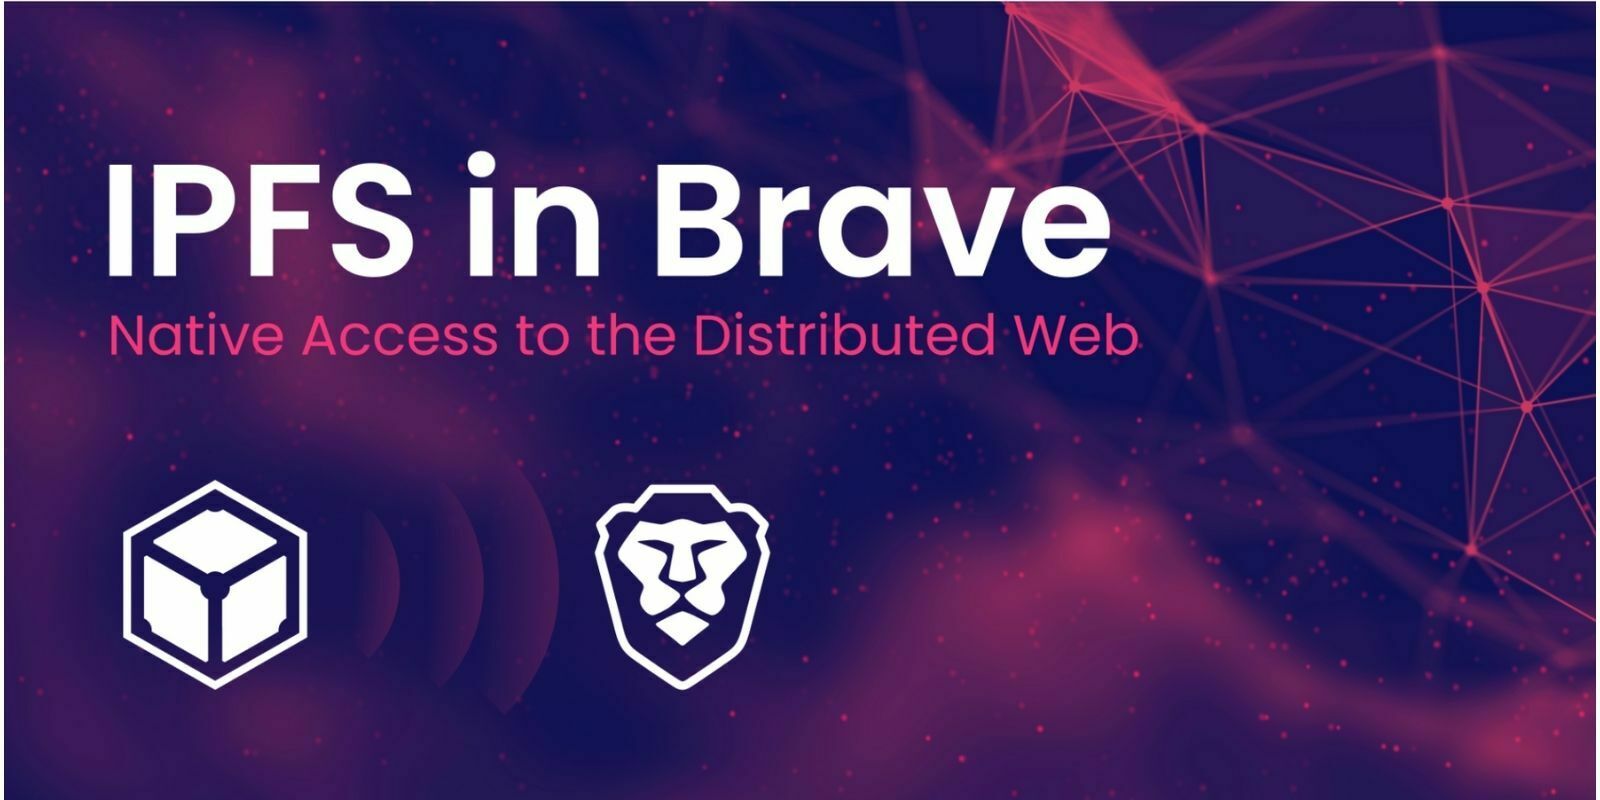 Le navigateur Brave (BAT) intègre le protocole IPFS pour faciliter l’accès au web décentralisé